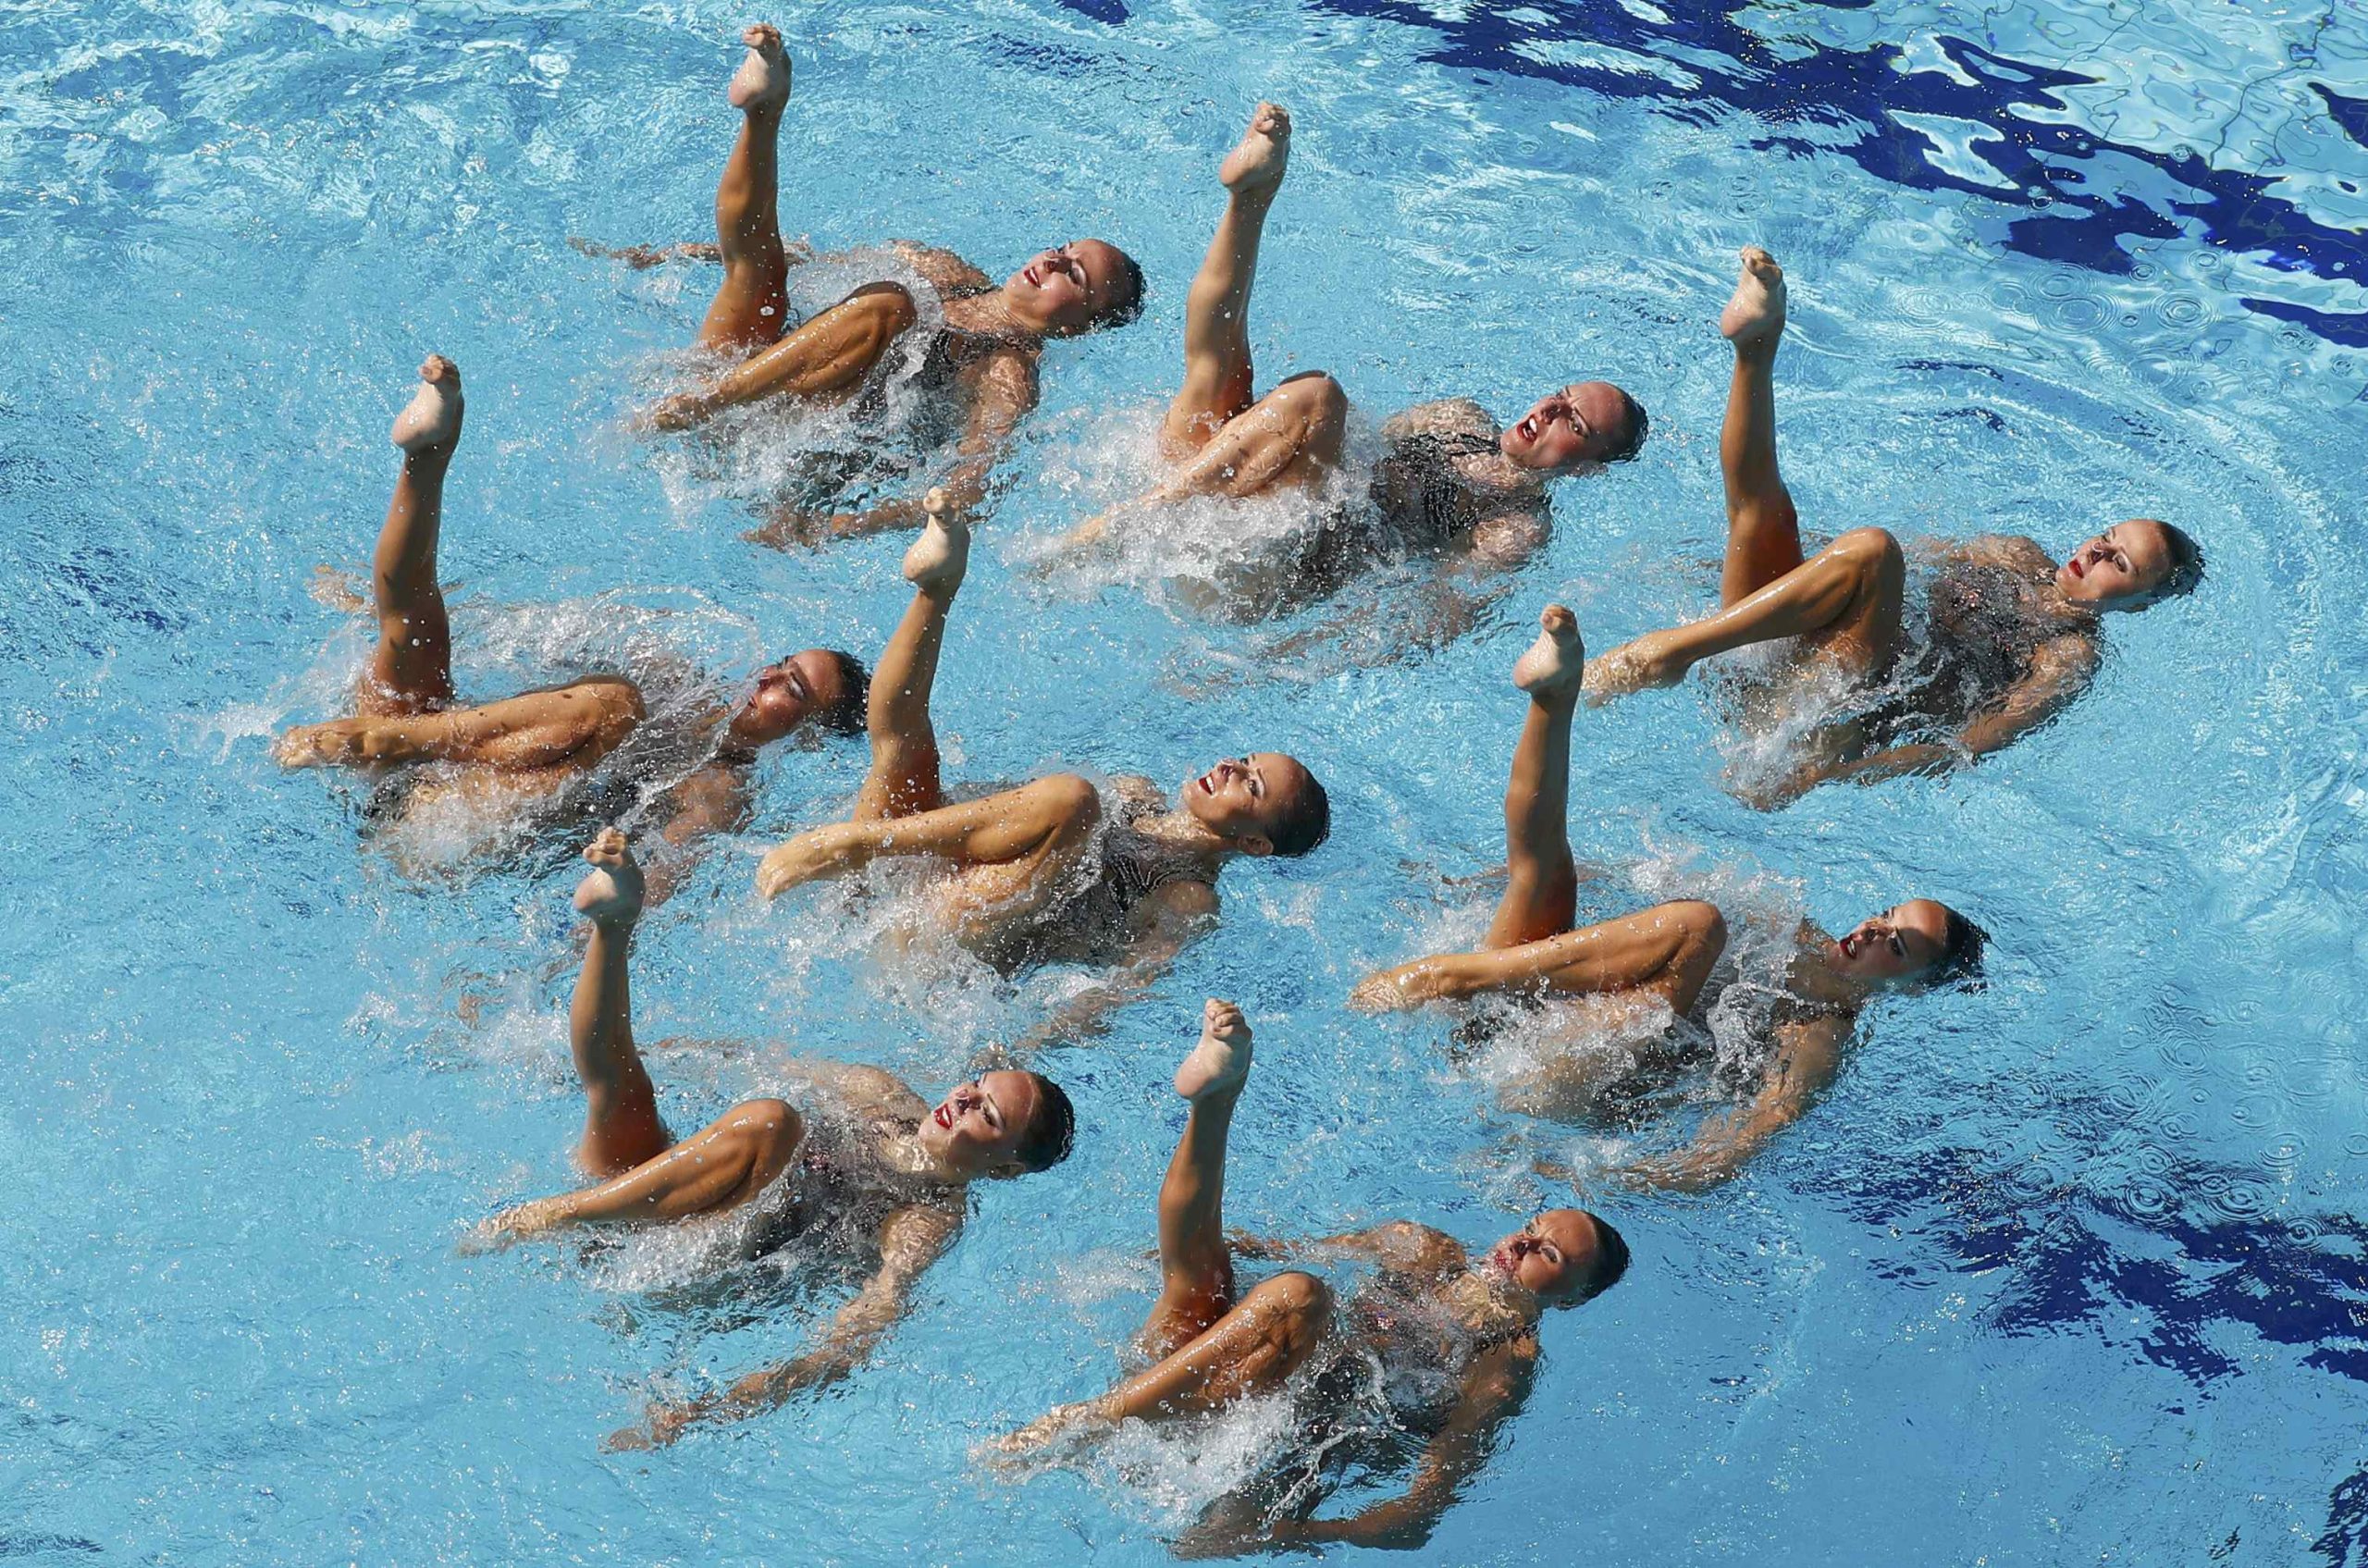 Γιατί τα μαλλιά των αθλητριών της συγχρονισμένης κολύμβησης είναι αψεγάδιαστα στο νερό; Αυτή είναι η απάντηση